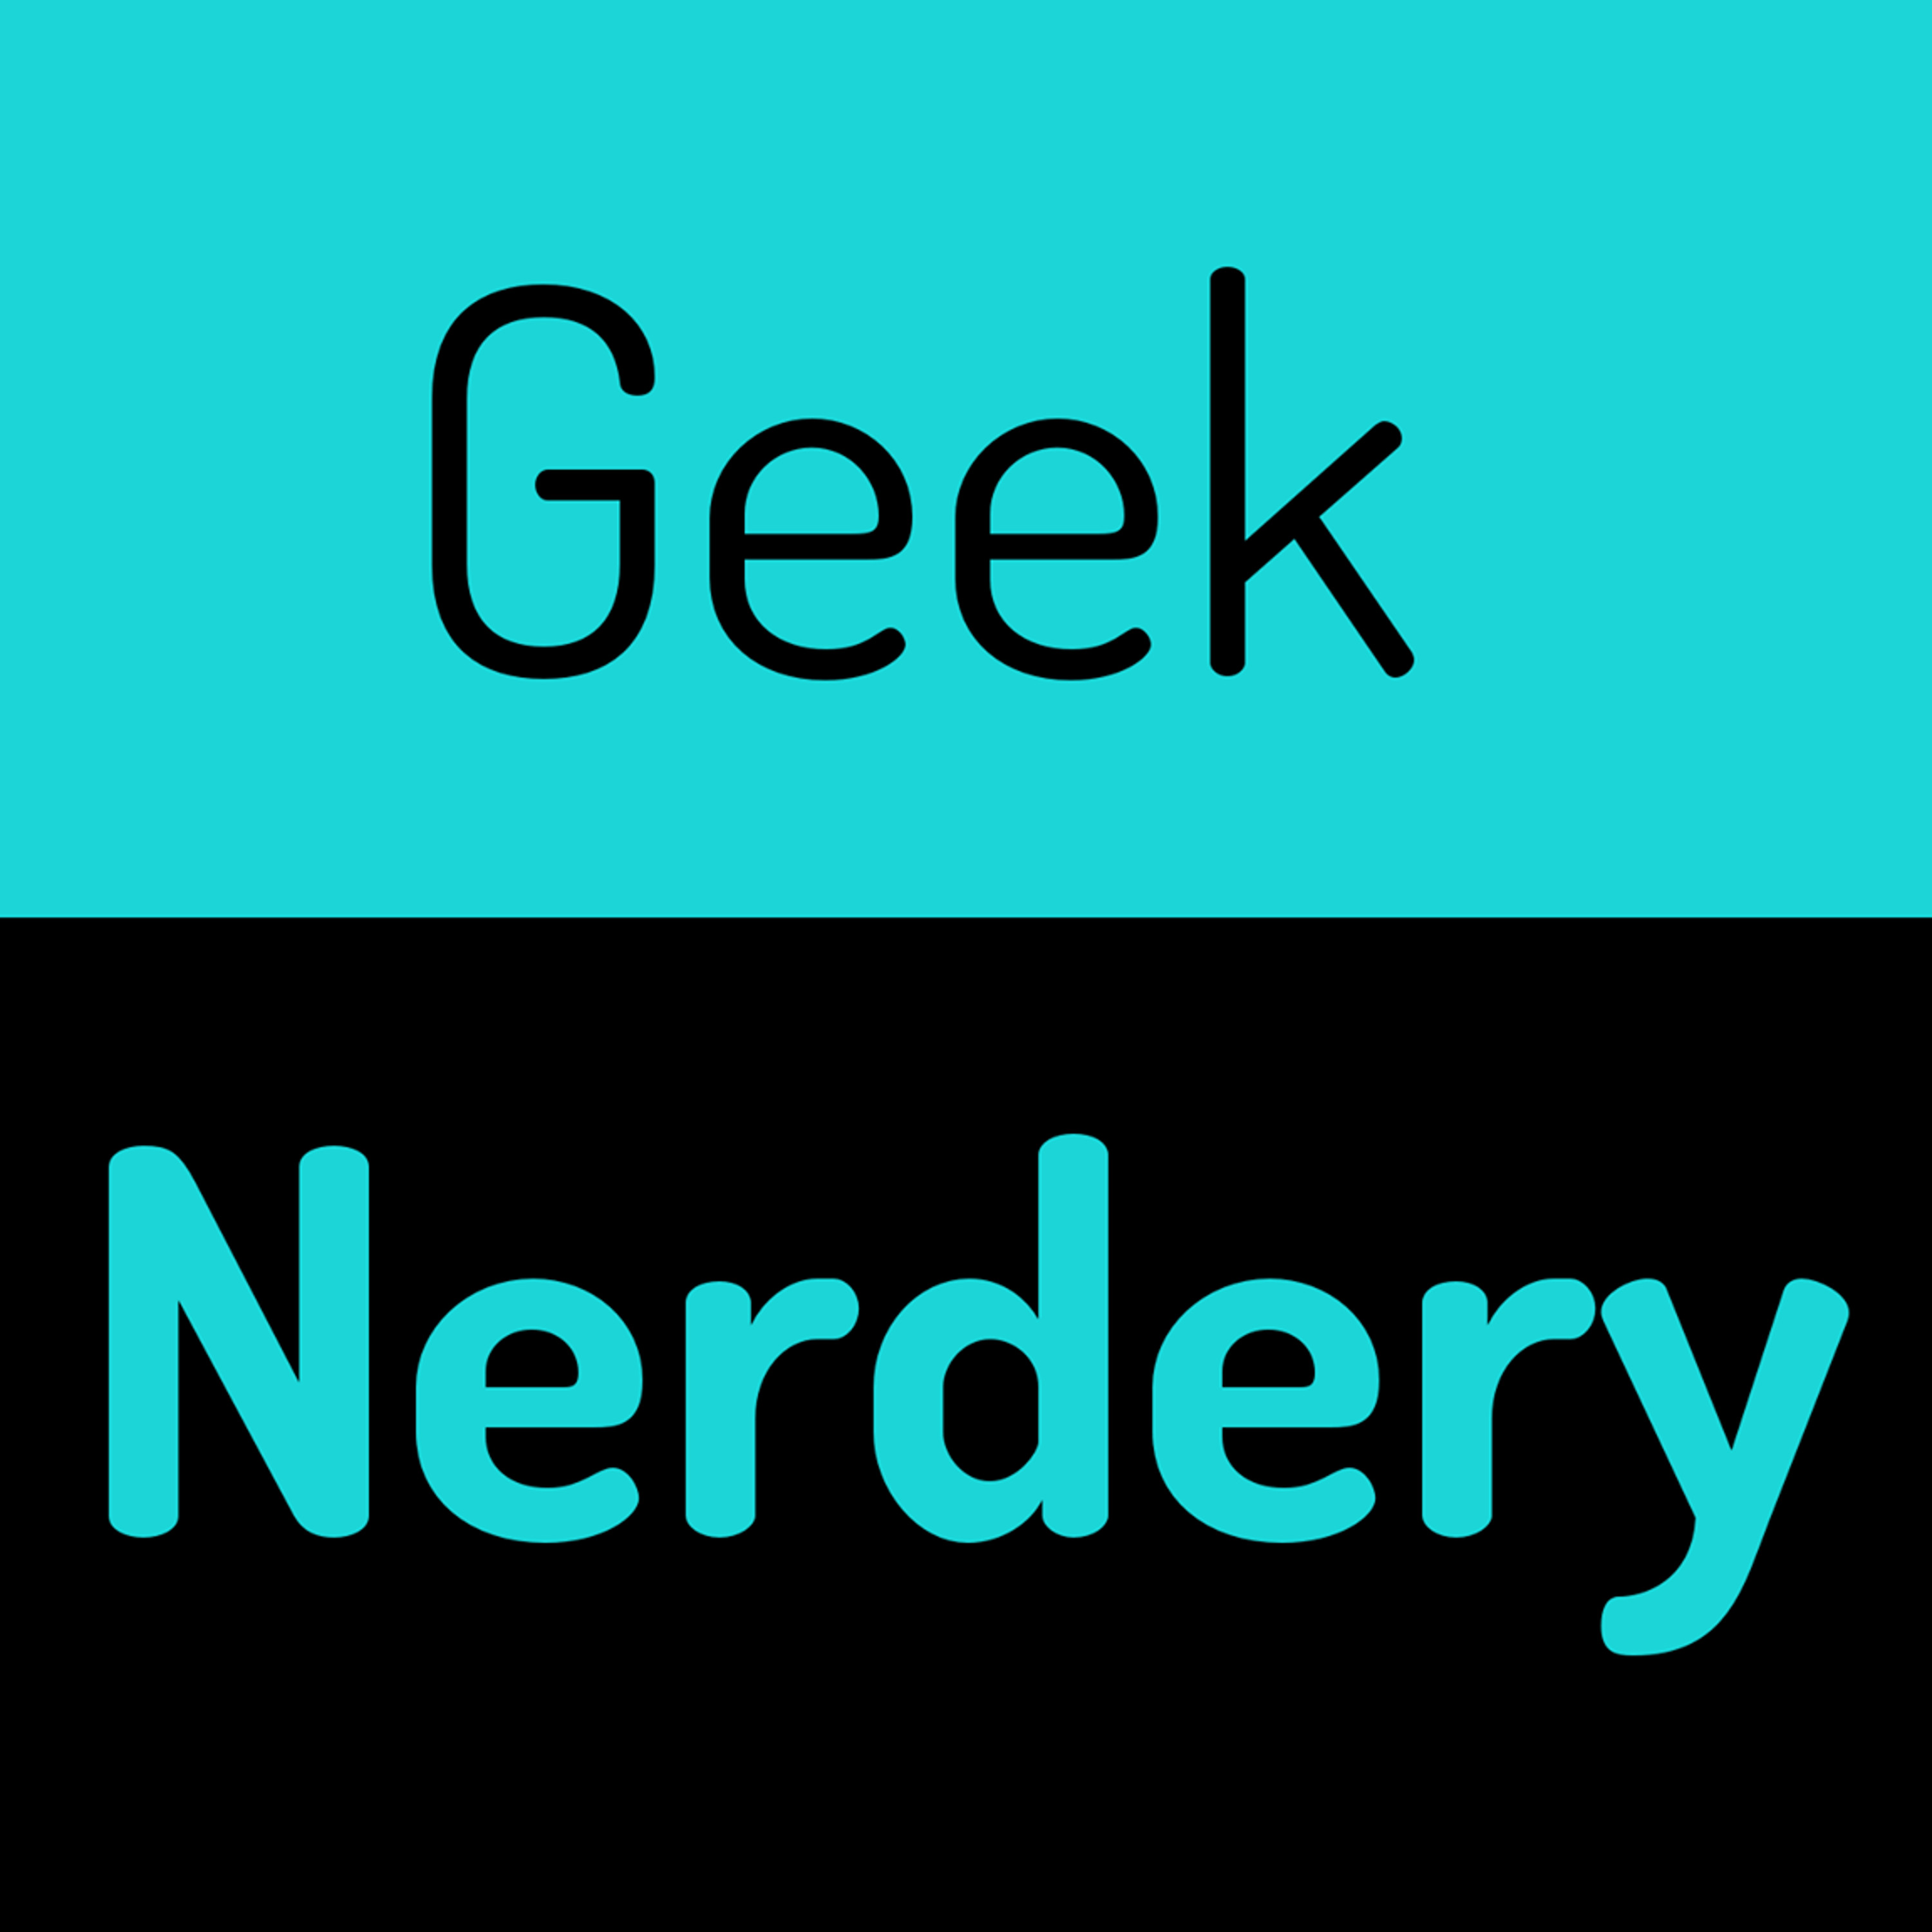 Geek Nerdery